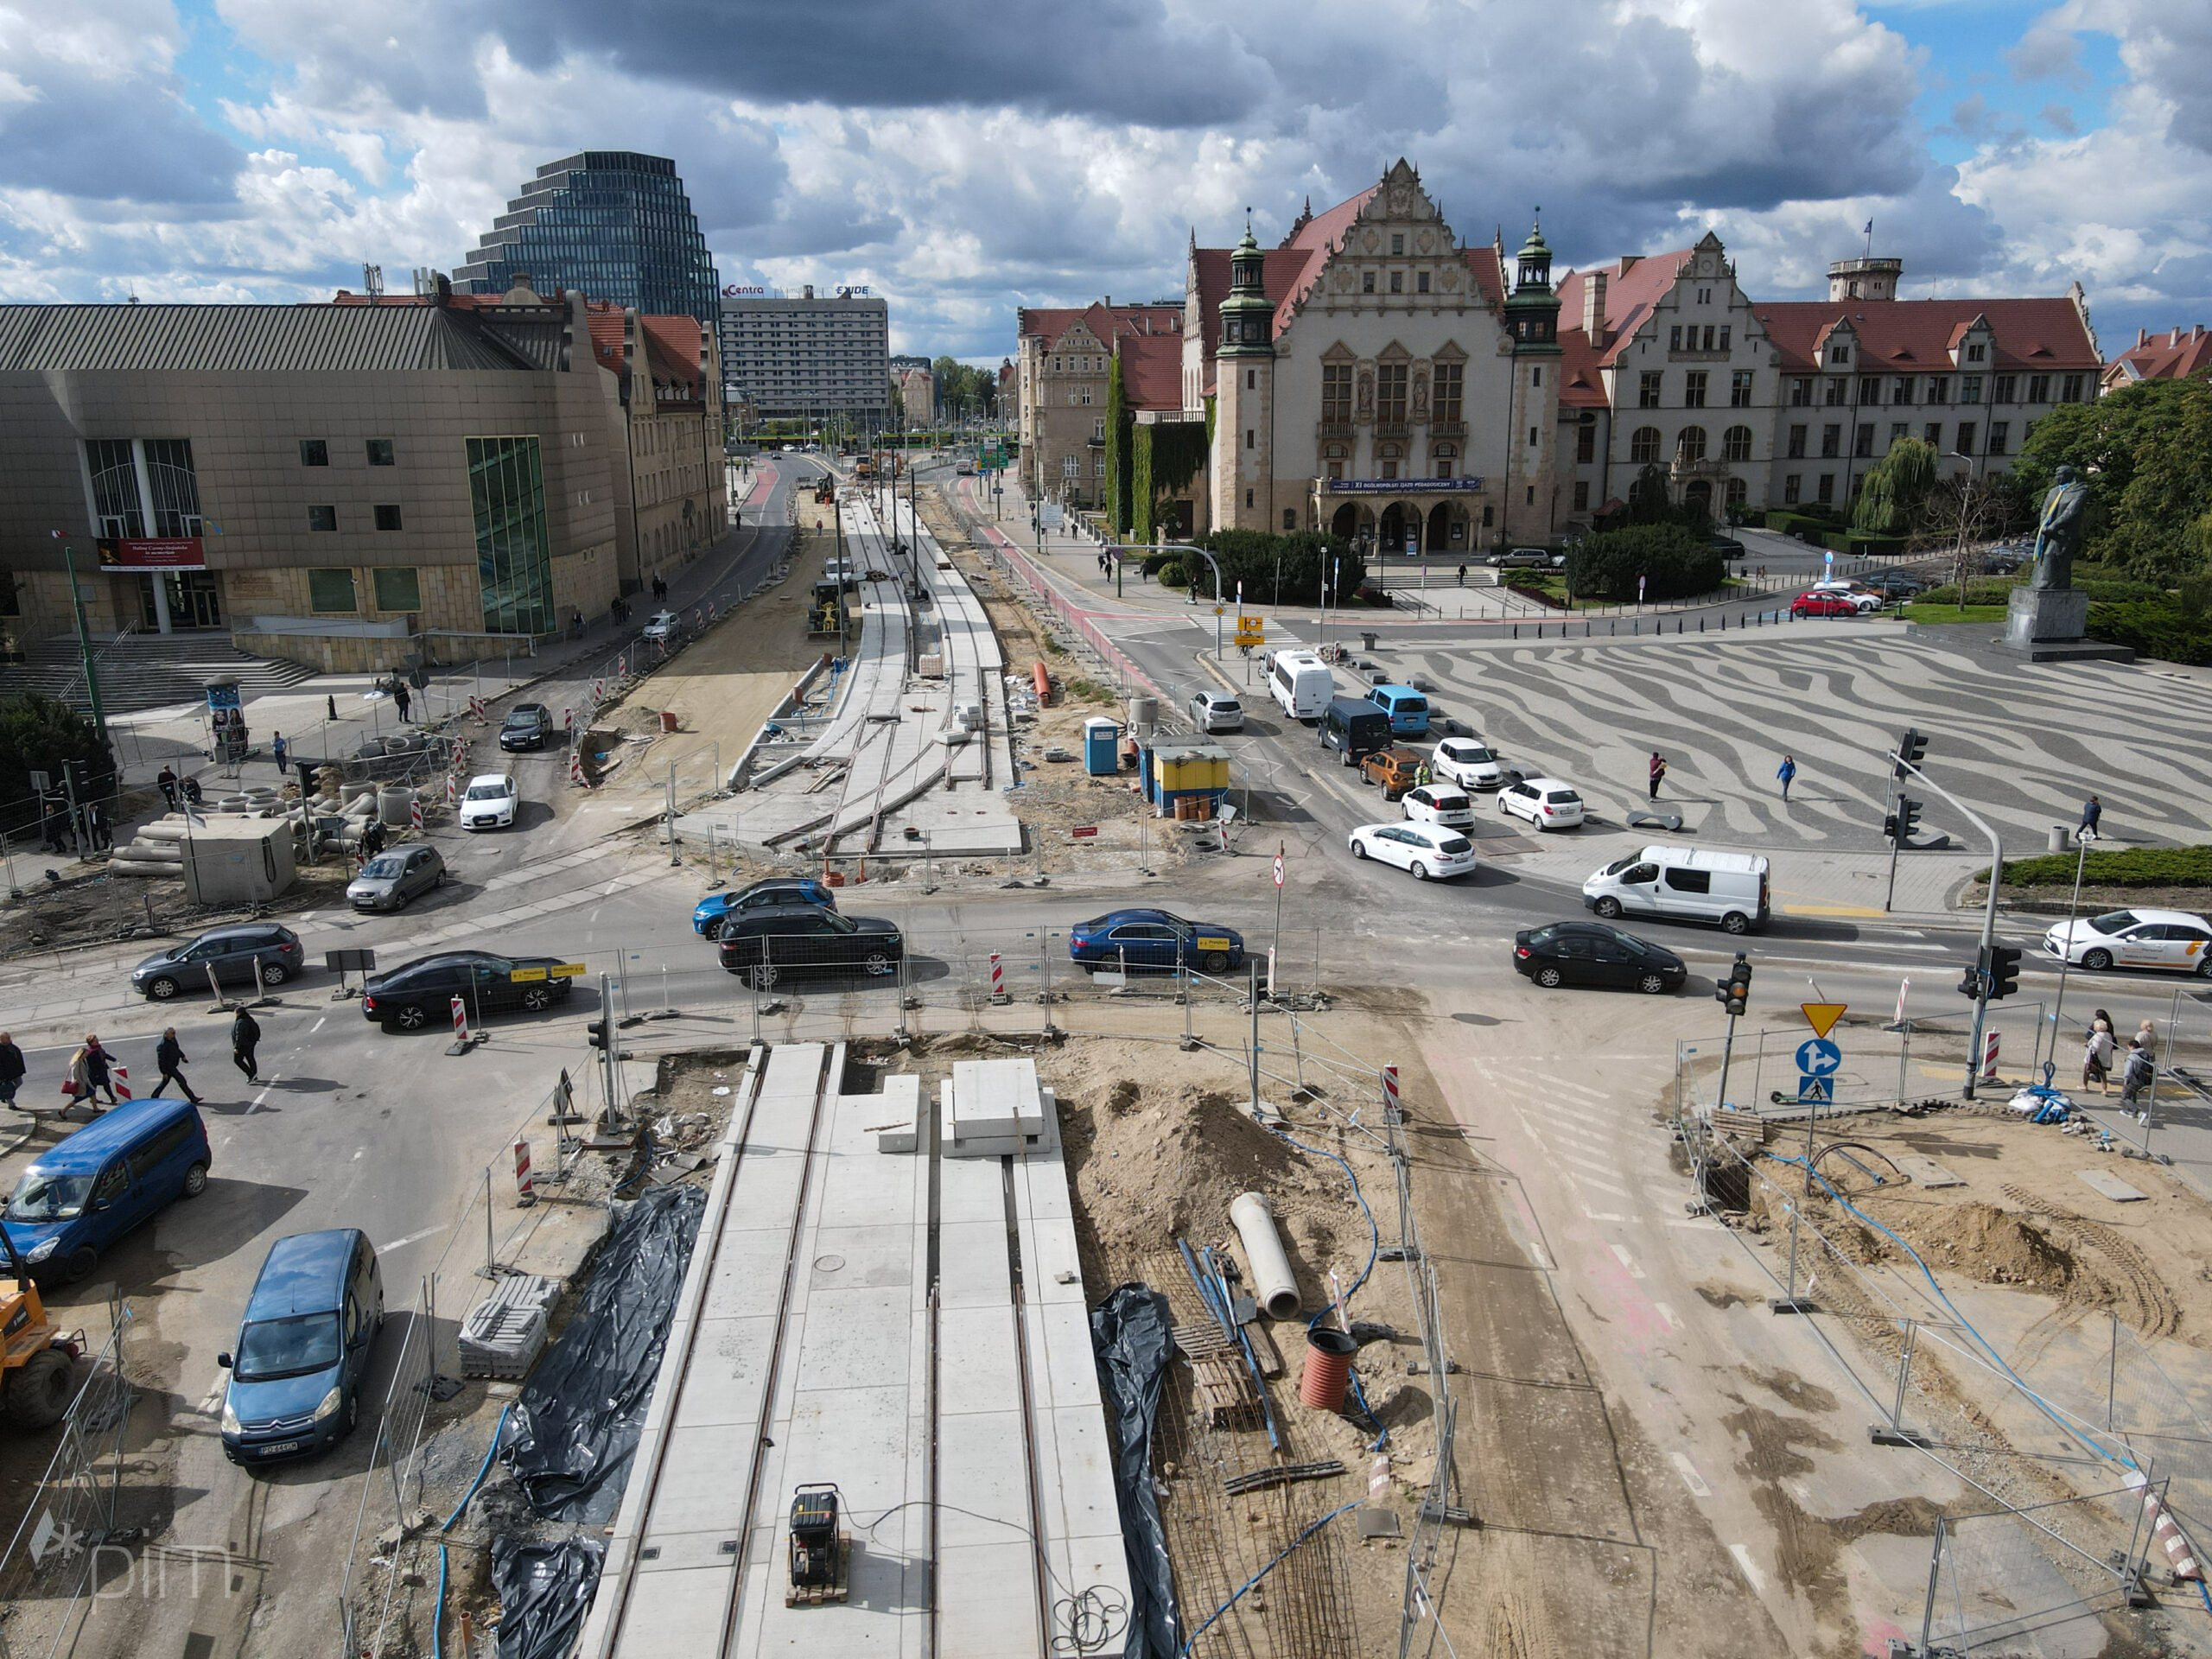 Prace na ul. św. Marcin mają zakończyć się do połowy 2023 roku. Jak wygląda plac budowy?